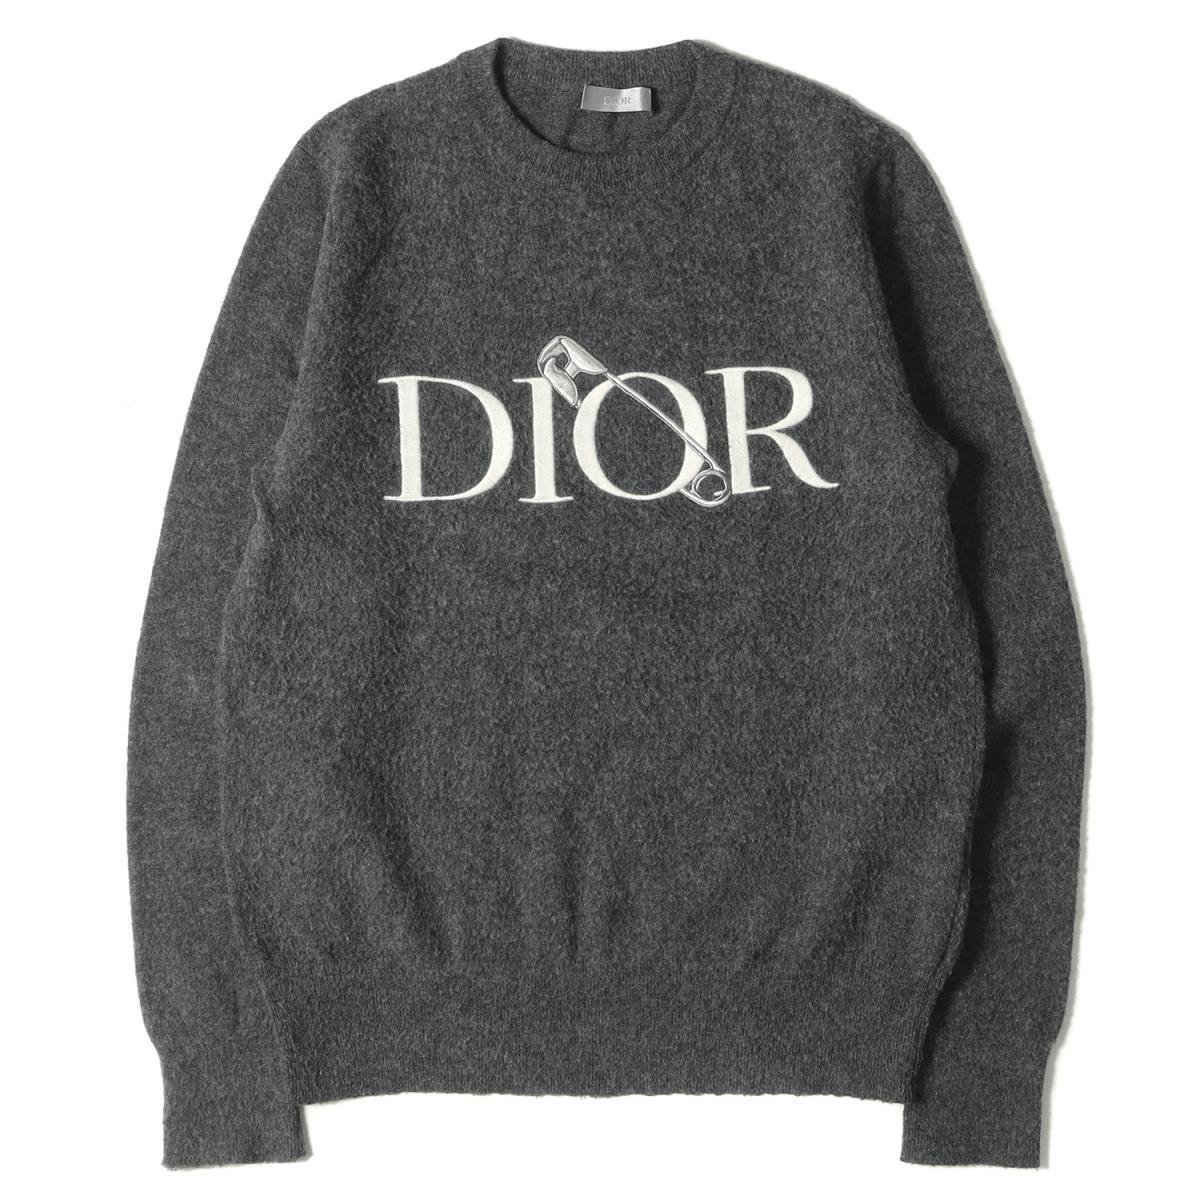 美品 Dior HOMME ディオールオム ニット ×JUDY BLAME ブランドロゴ刺繍クルーネックウールニット 20AW グレー 灰 S トップス 長袖